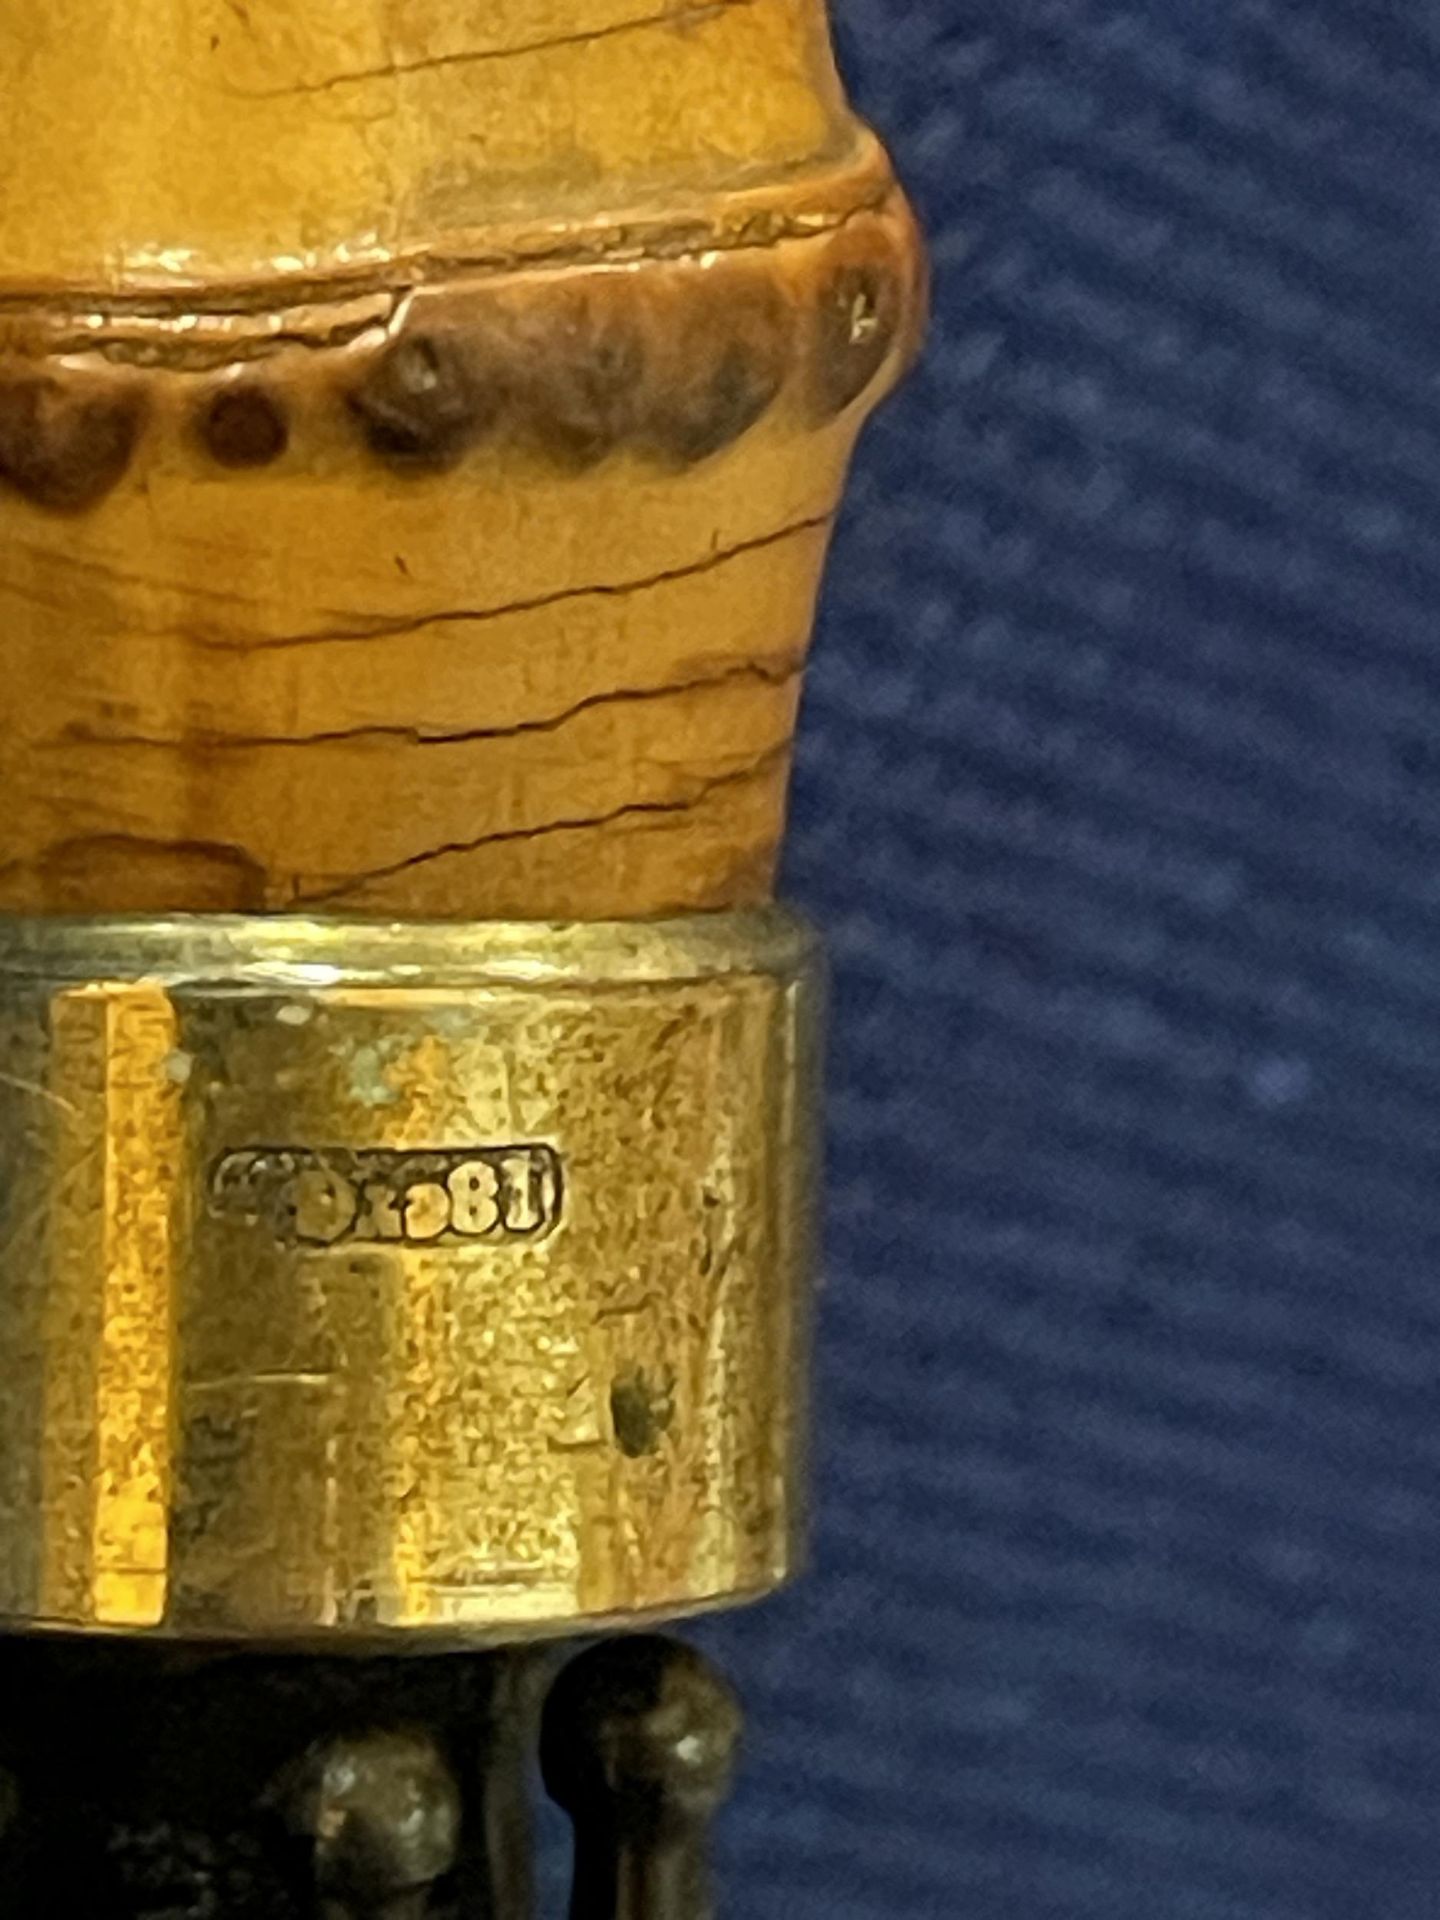 AN S. FOX PARAGON UMBRELLA WITH AN 18 CARAT GOLD COLLAR - Image 3 of 5